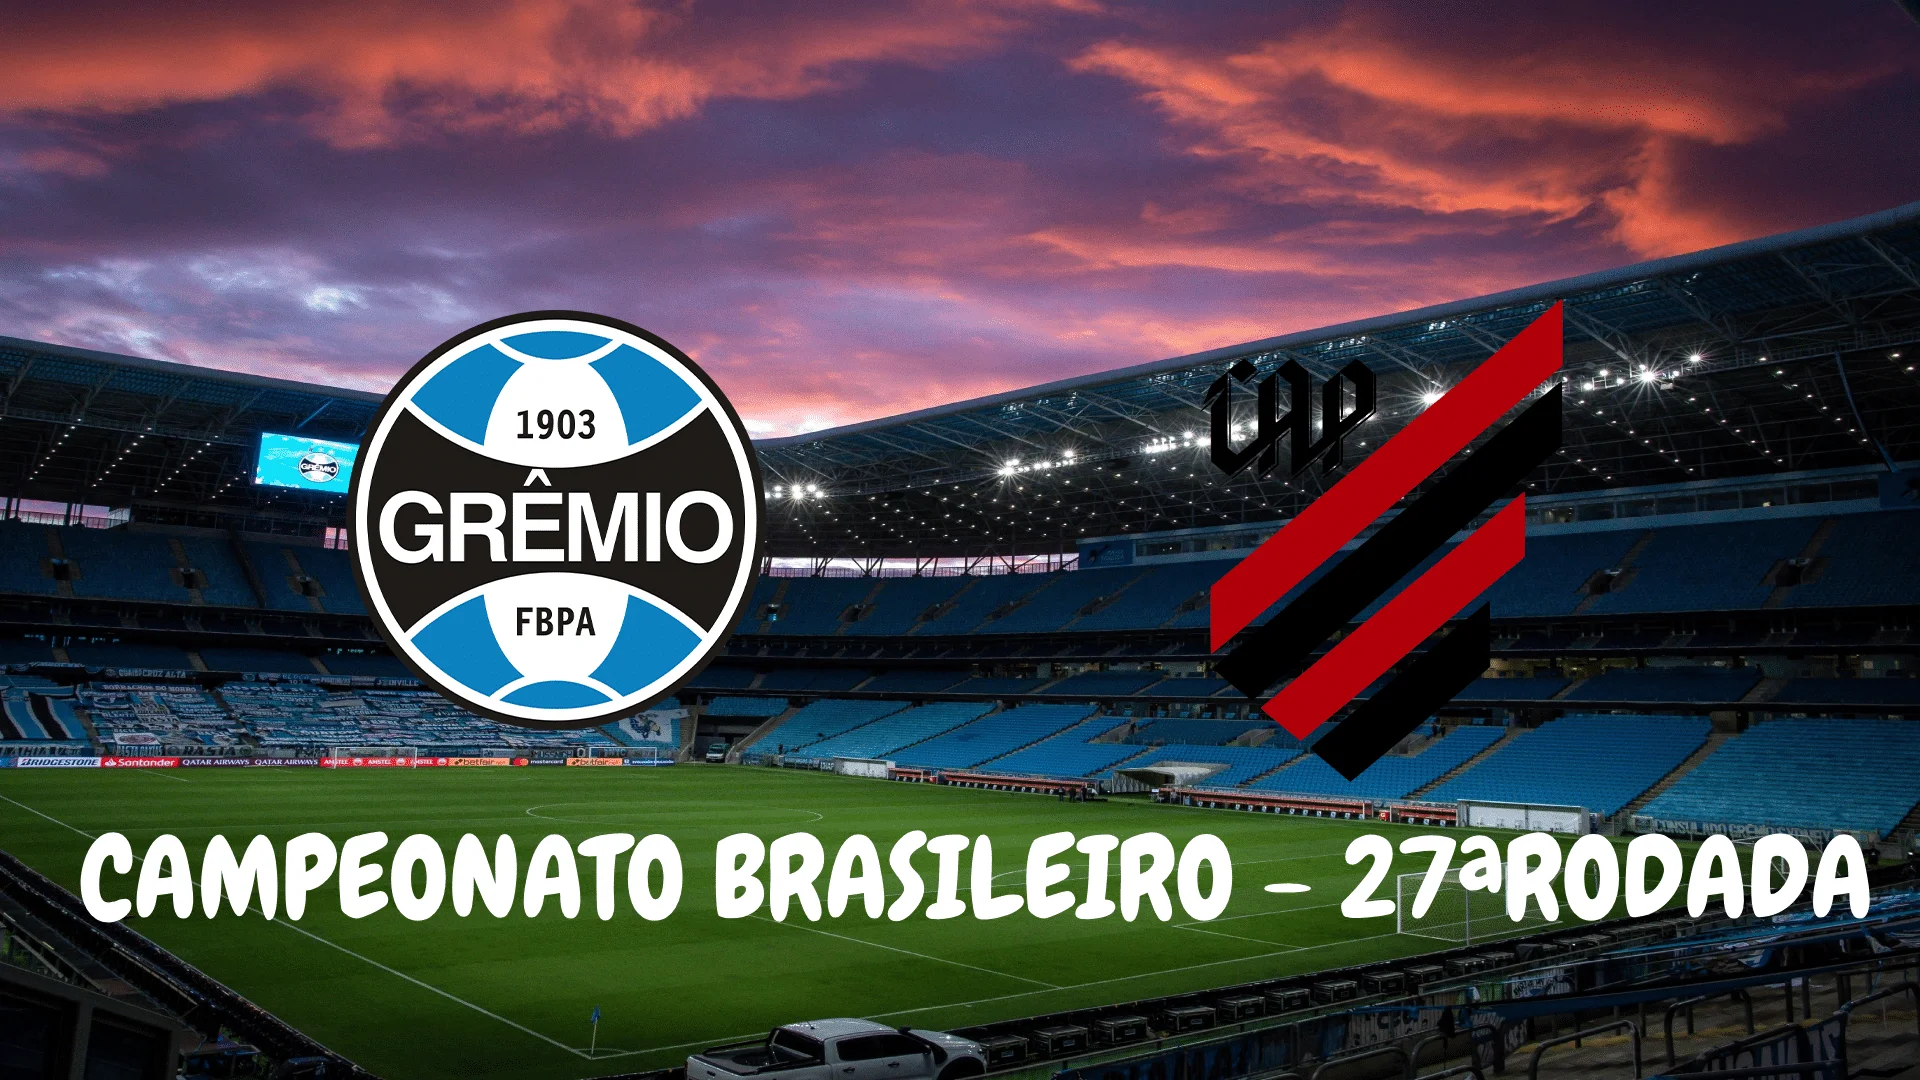 Grêmio vs Caxias: A Rivalry That Ignites Passion